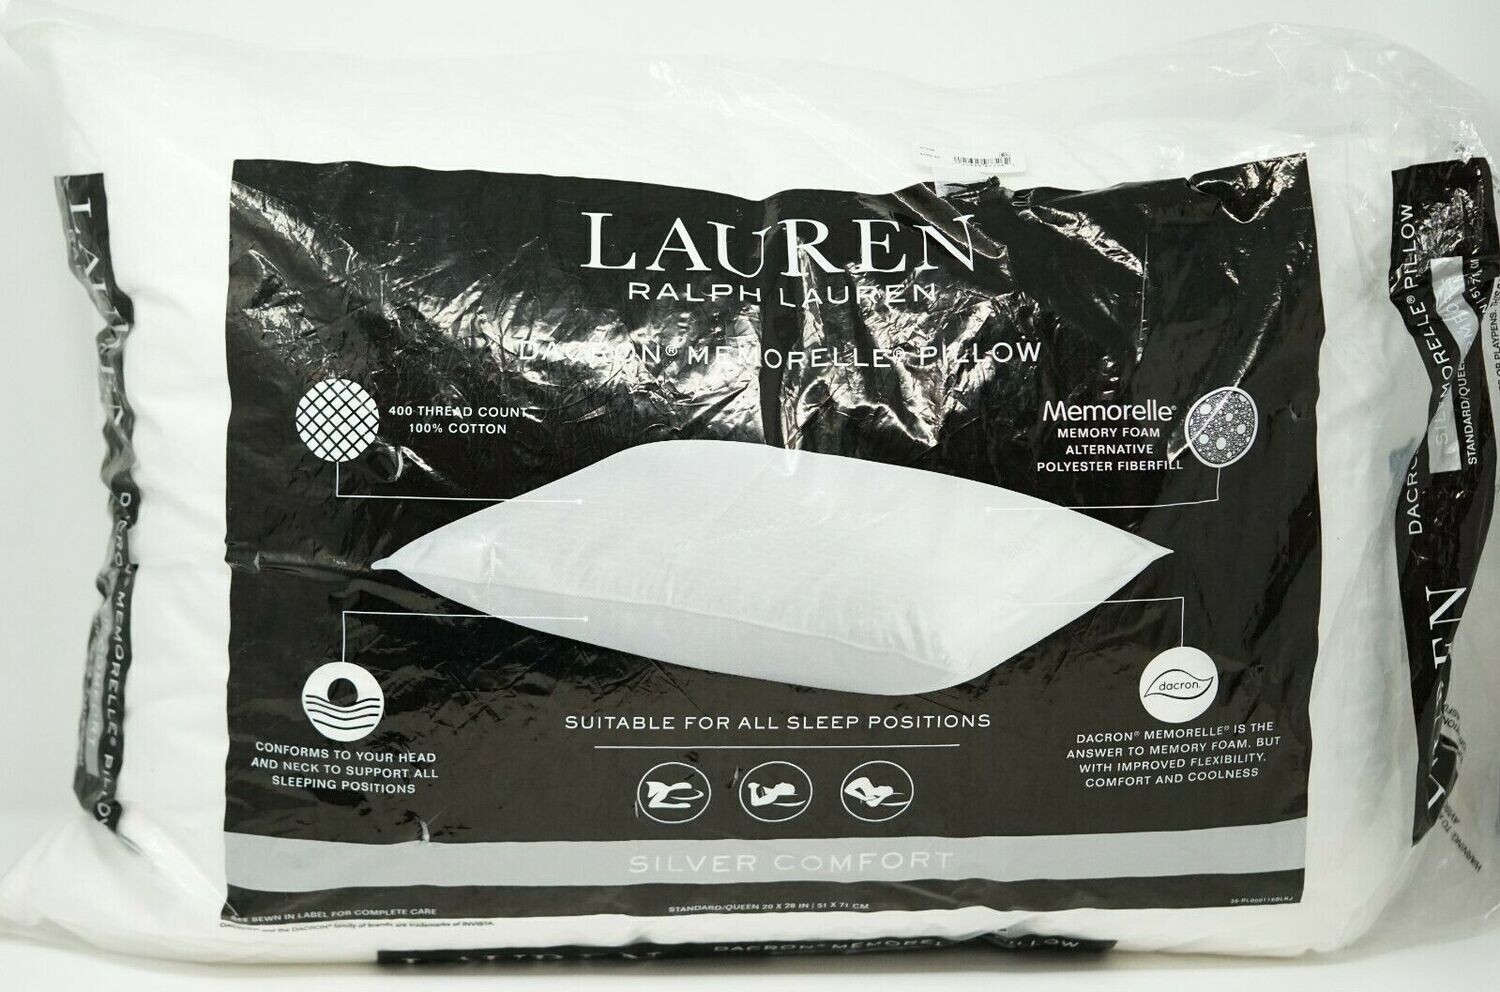 Lauren Ralph Lauren Silver Comfort Dacron Memorelle Bed Pillow Standard - White